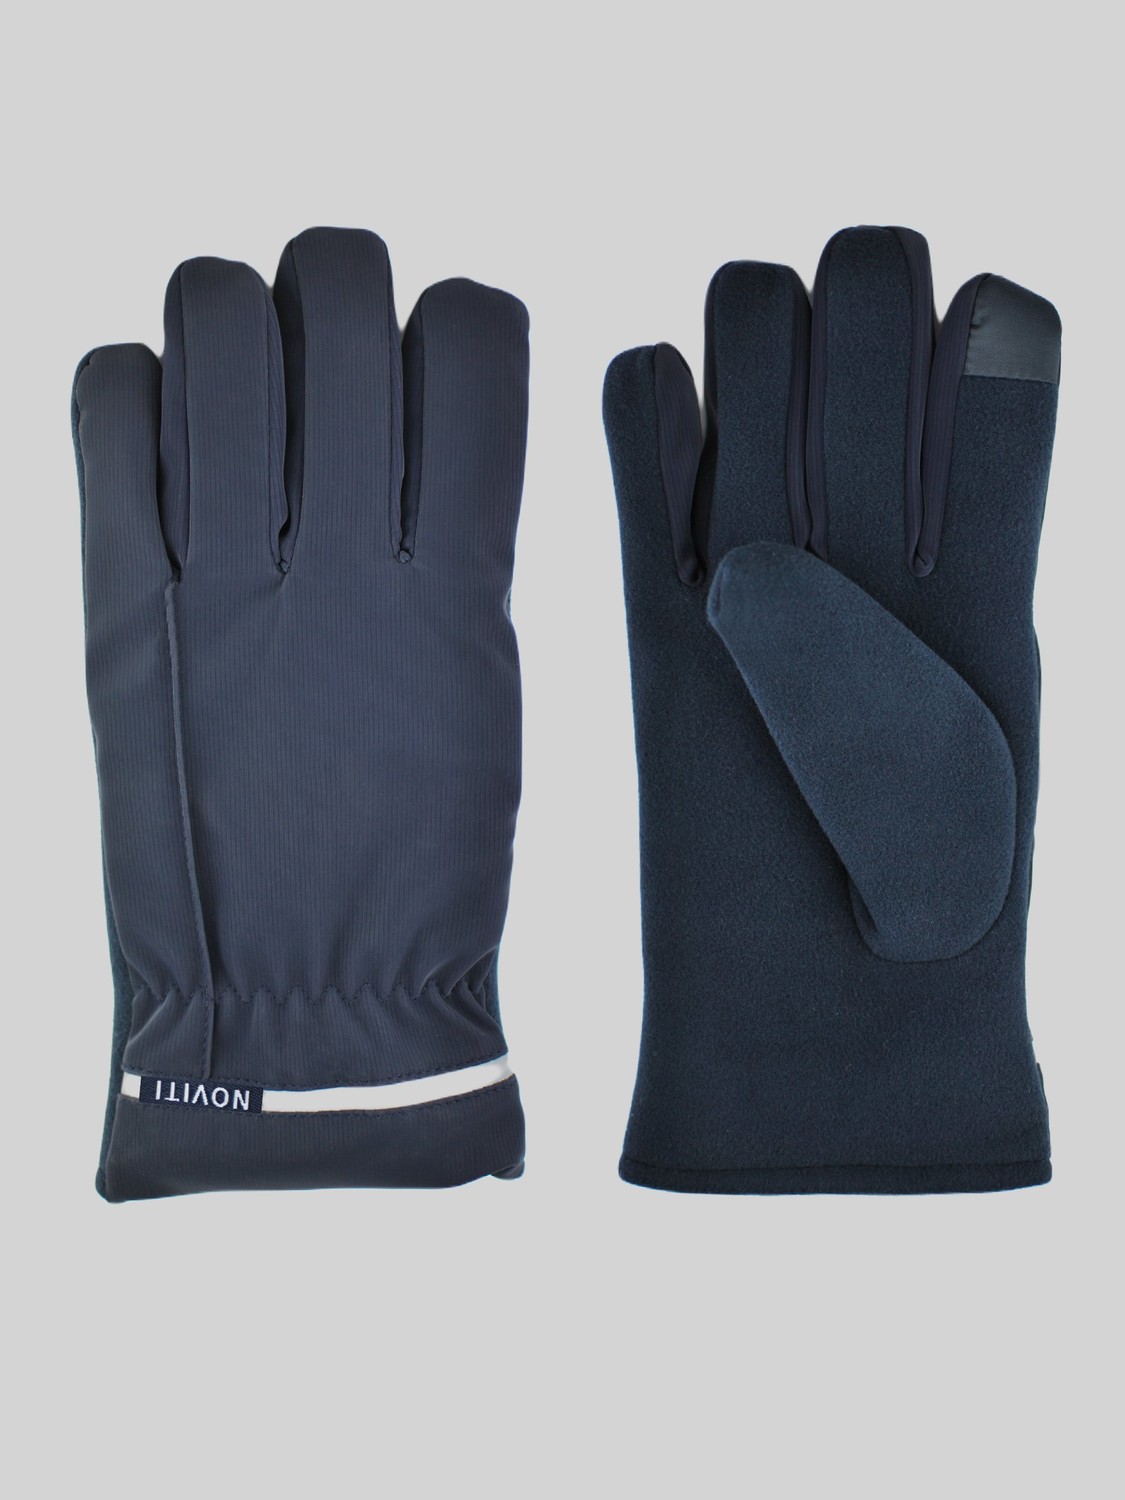 NOVITI Man's Gloves RT004-M-01 Navy Blue